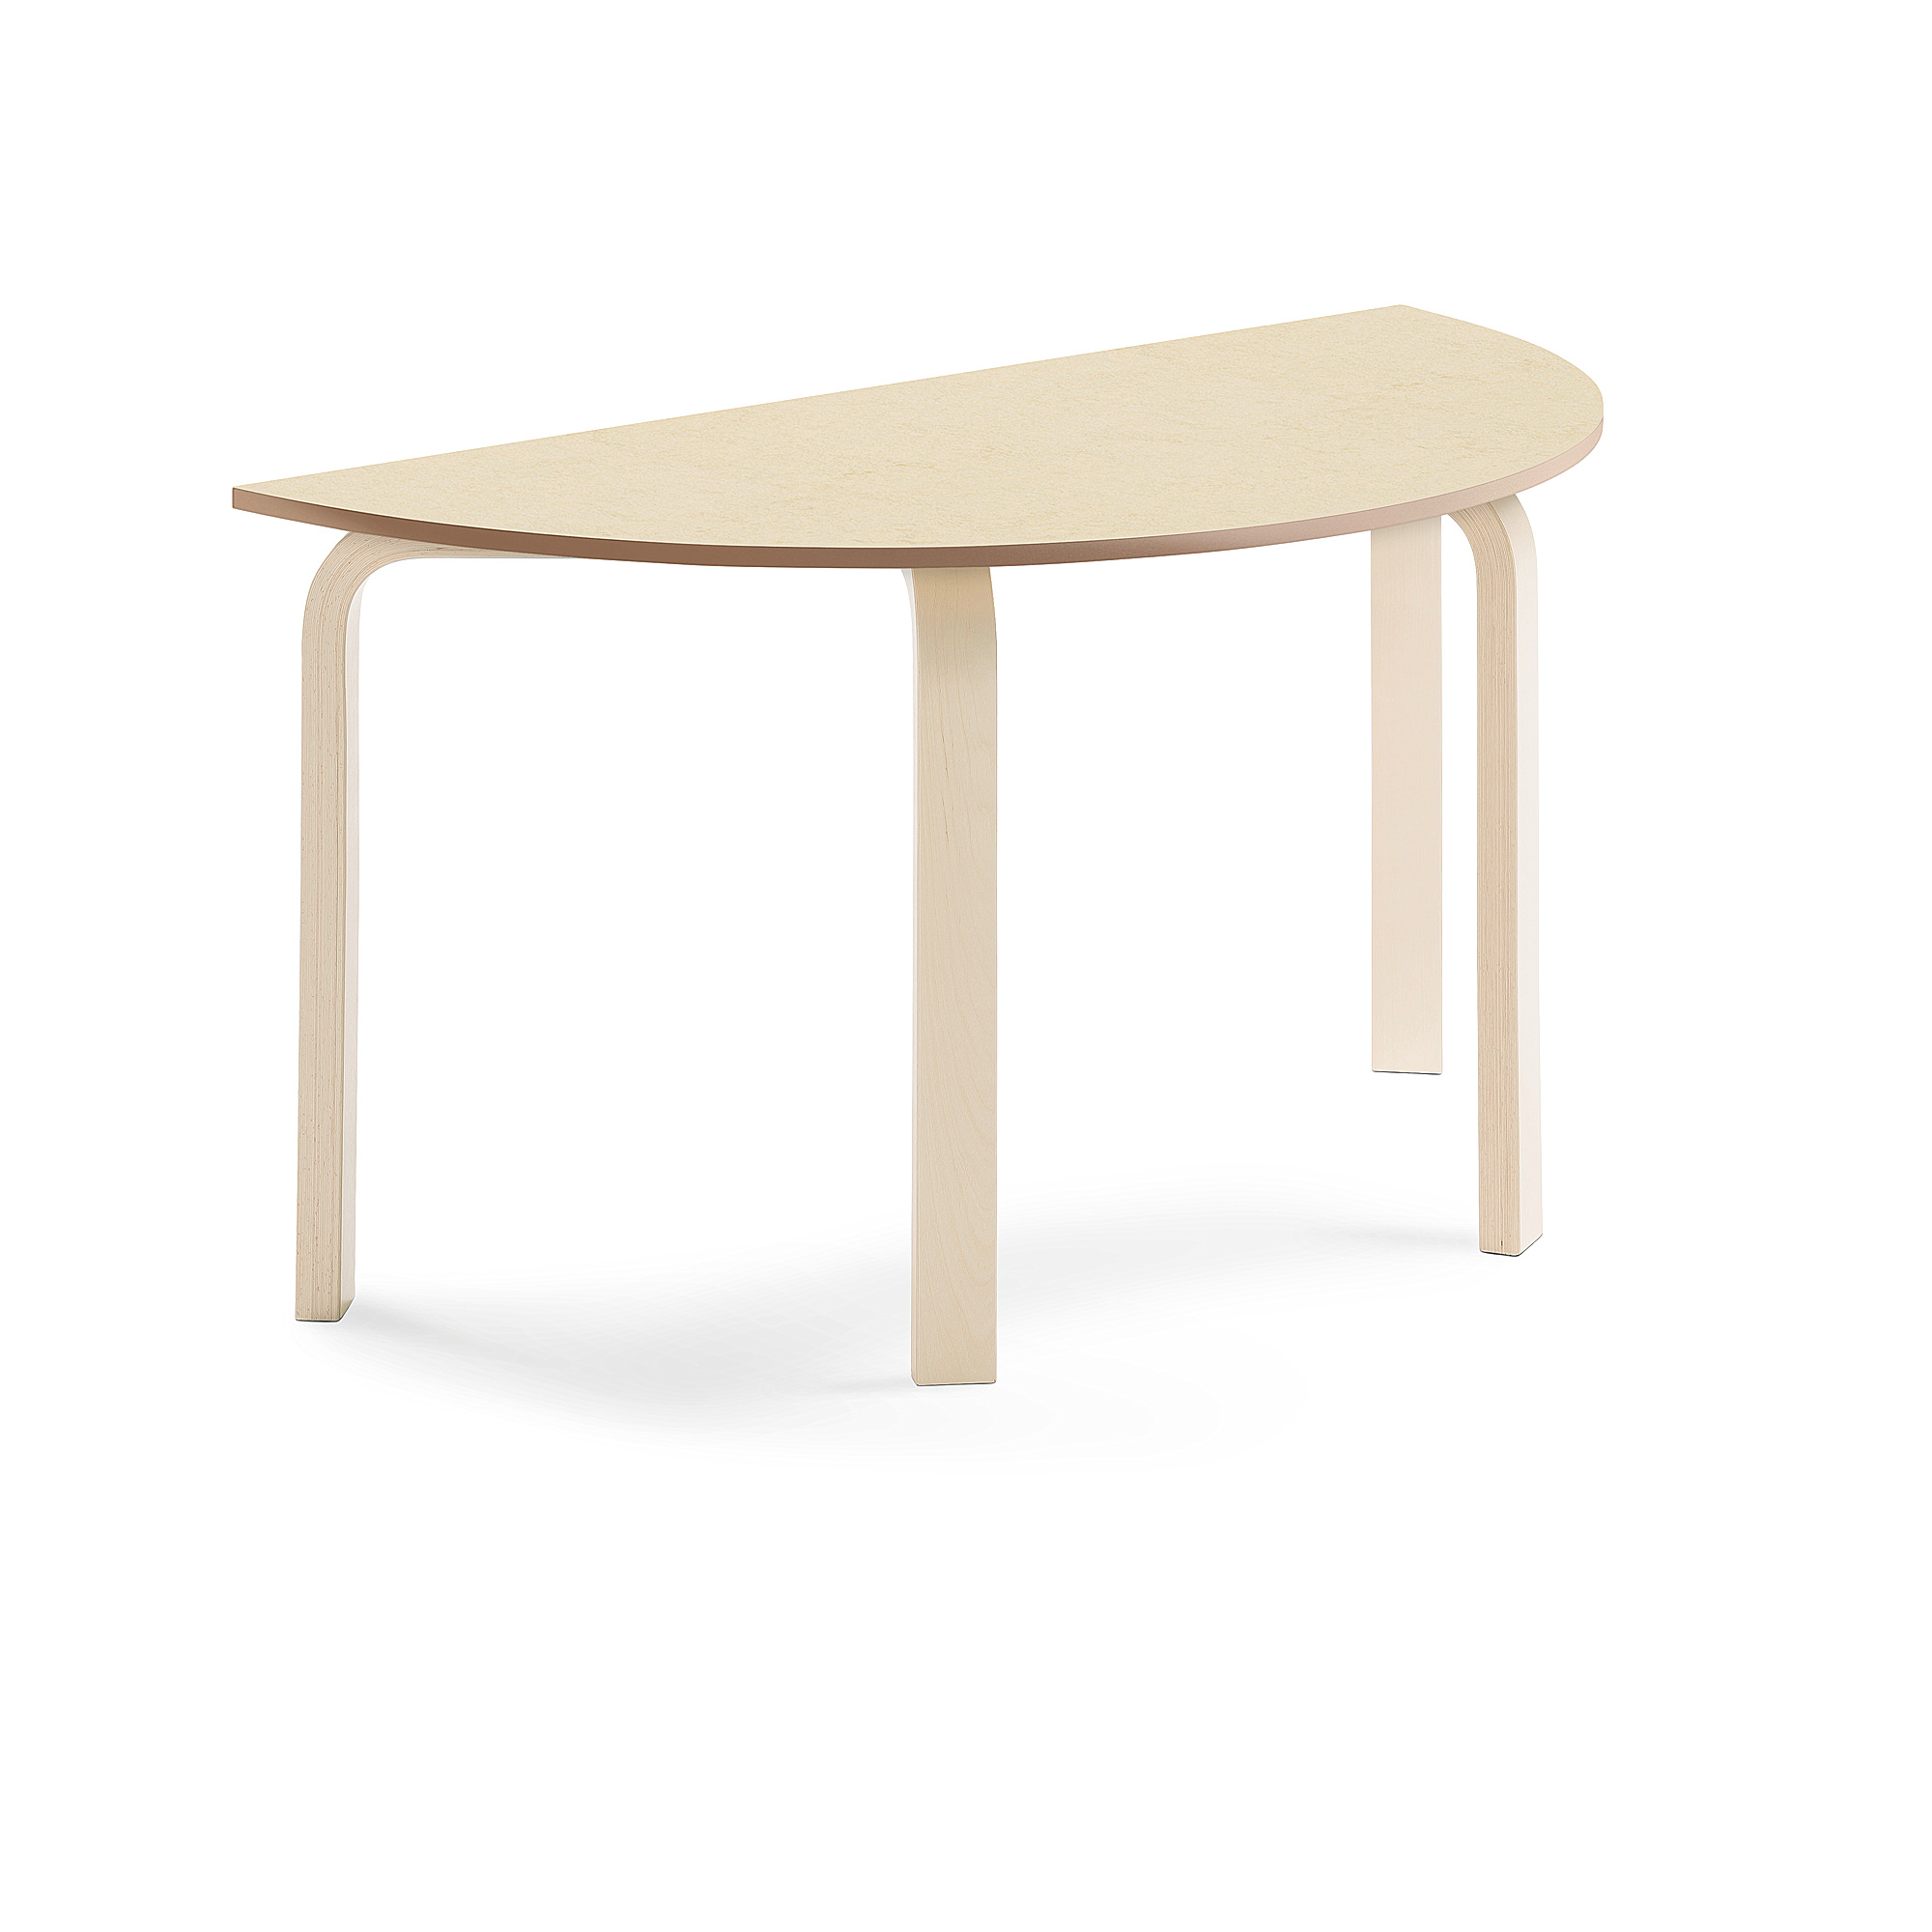 Stůl ELTON, půlkruh, 1200x600x640 mm, bříza, akustické linoleum, béžová